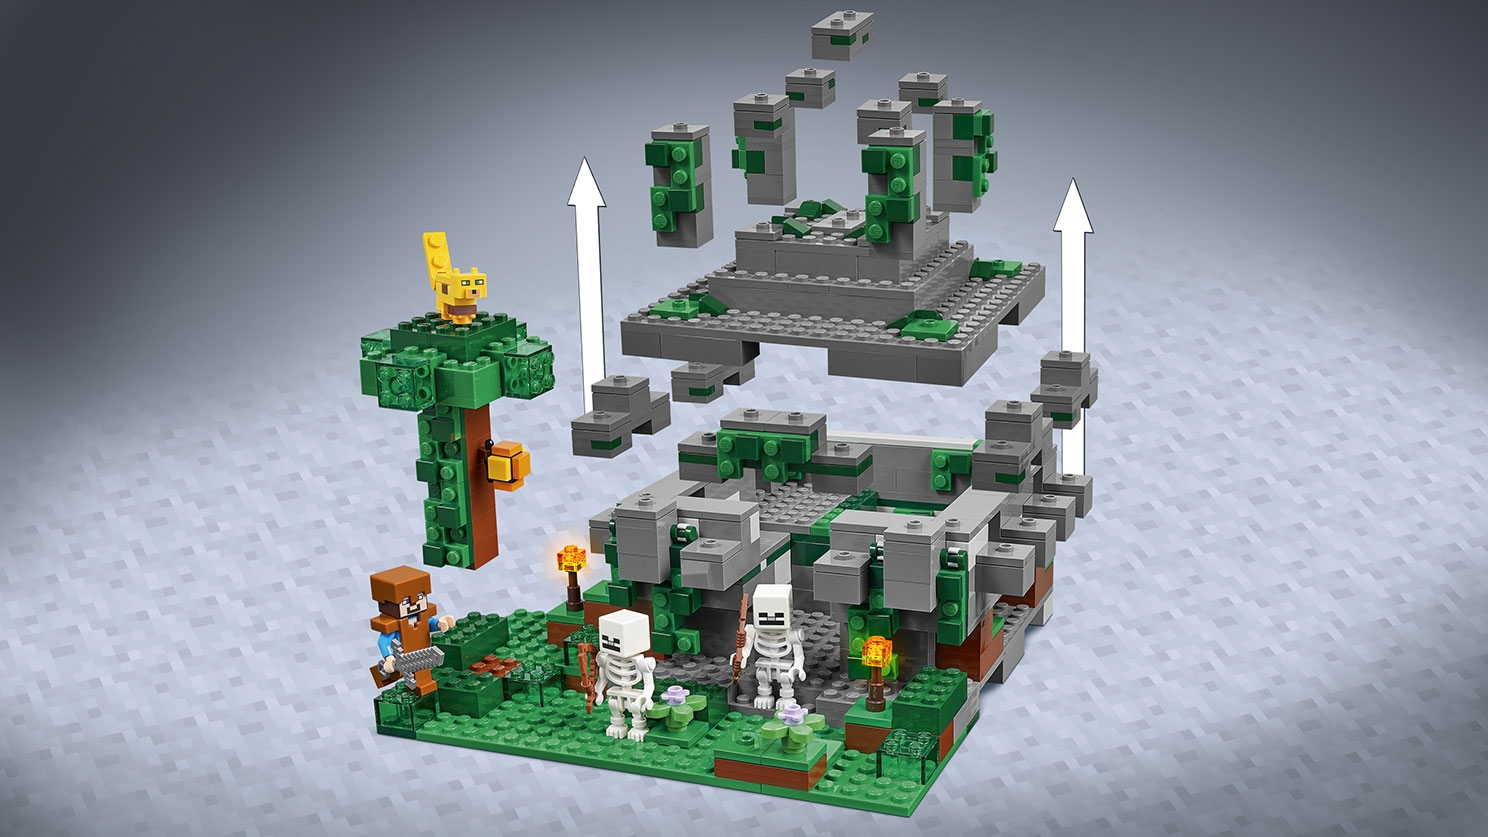 ジャングルの寺院 21132 - レゴ®マインクラフト セット - LEGO.comキッズ